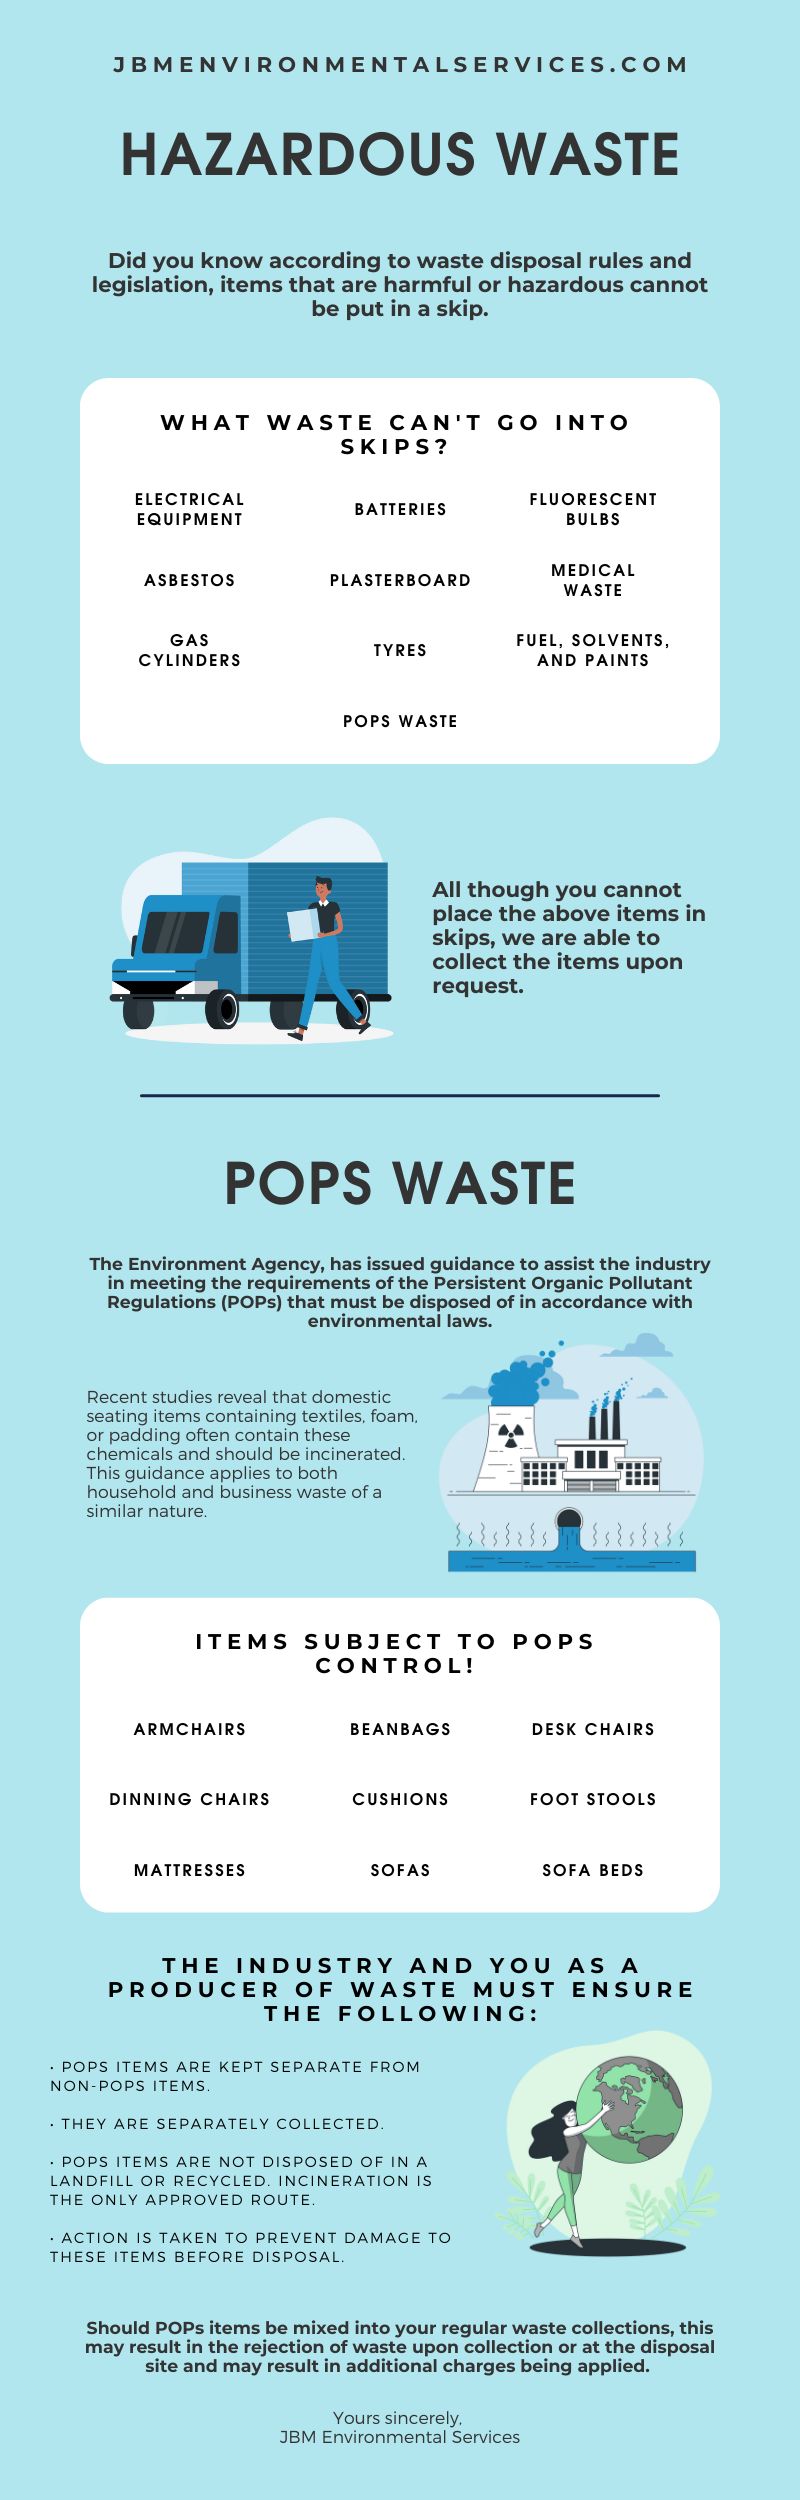 Hazardous Waste & POPs Infographic